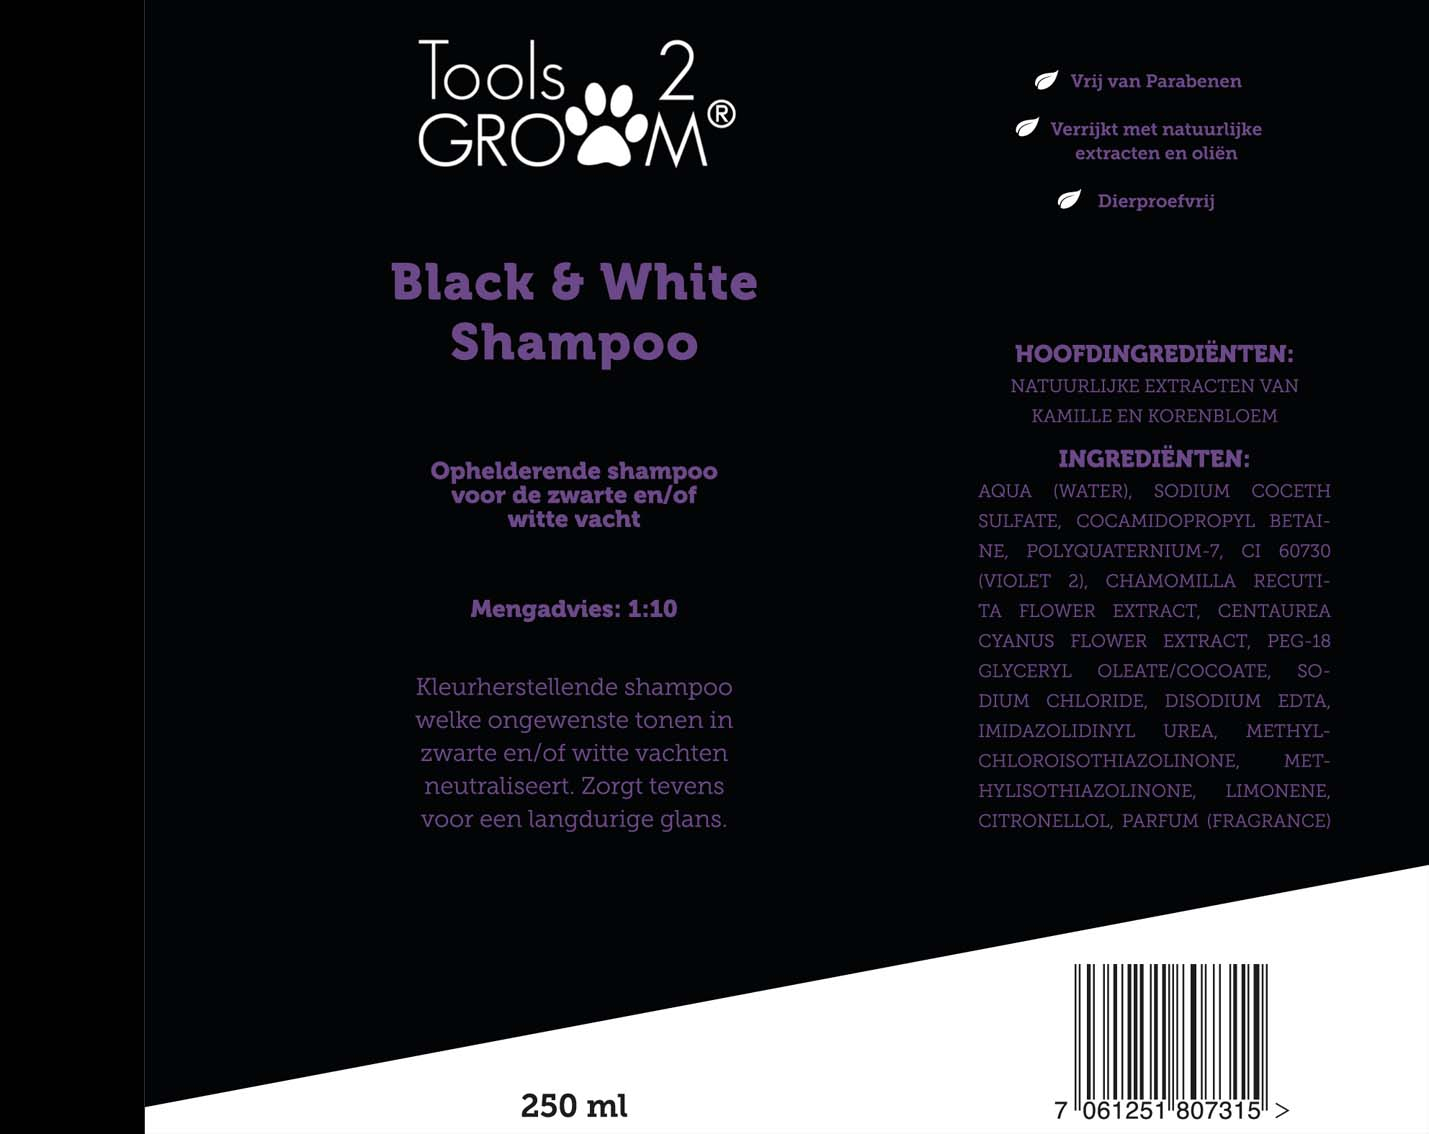 Tools-2-groom Black & White hondenshampoo 250ml 